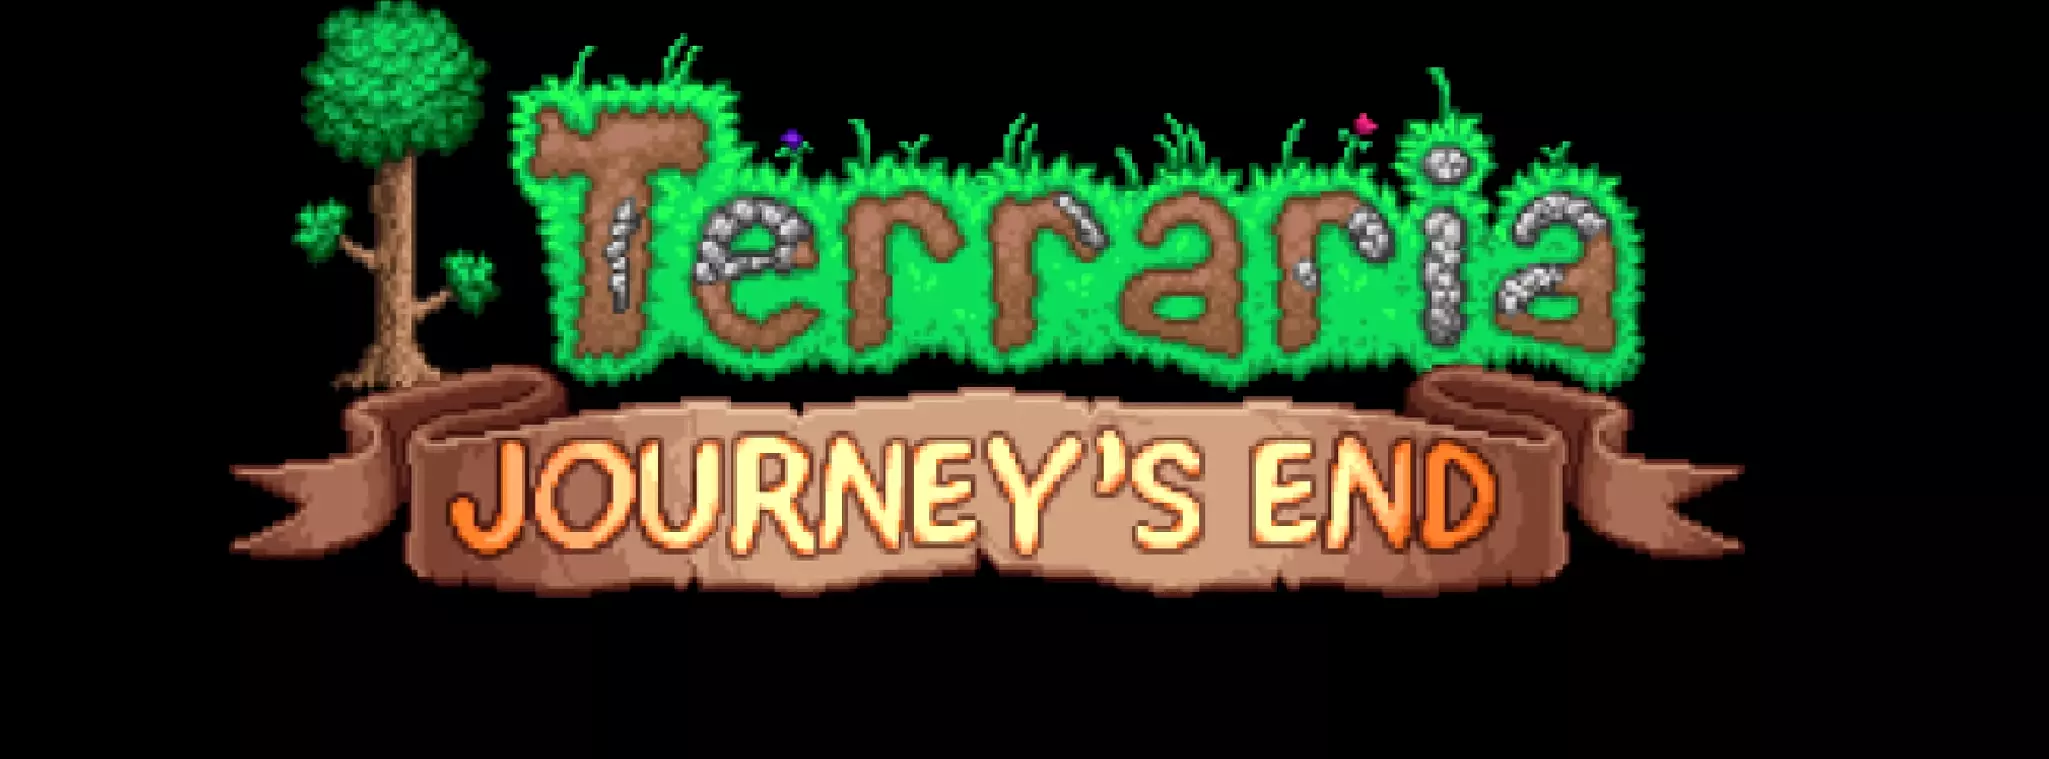 Terraria: Journey's End - четвертое и последнее крупное обновление для инди-песочницы - выйдет на ПК 16 мая, объявил разработчик Re-Logic.